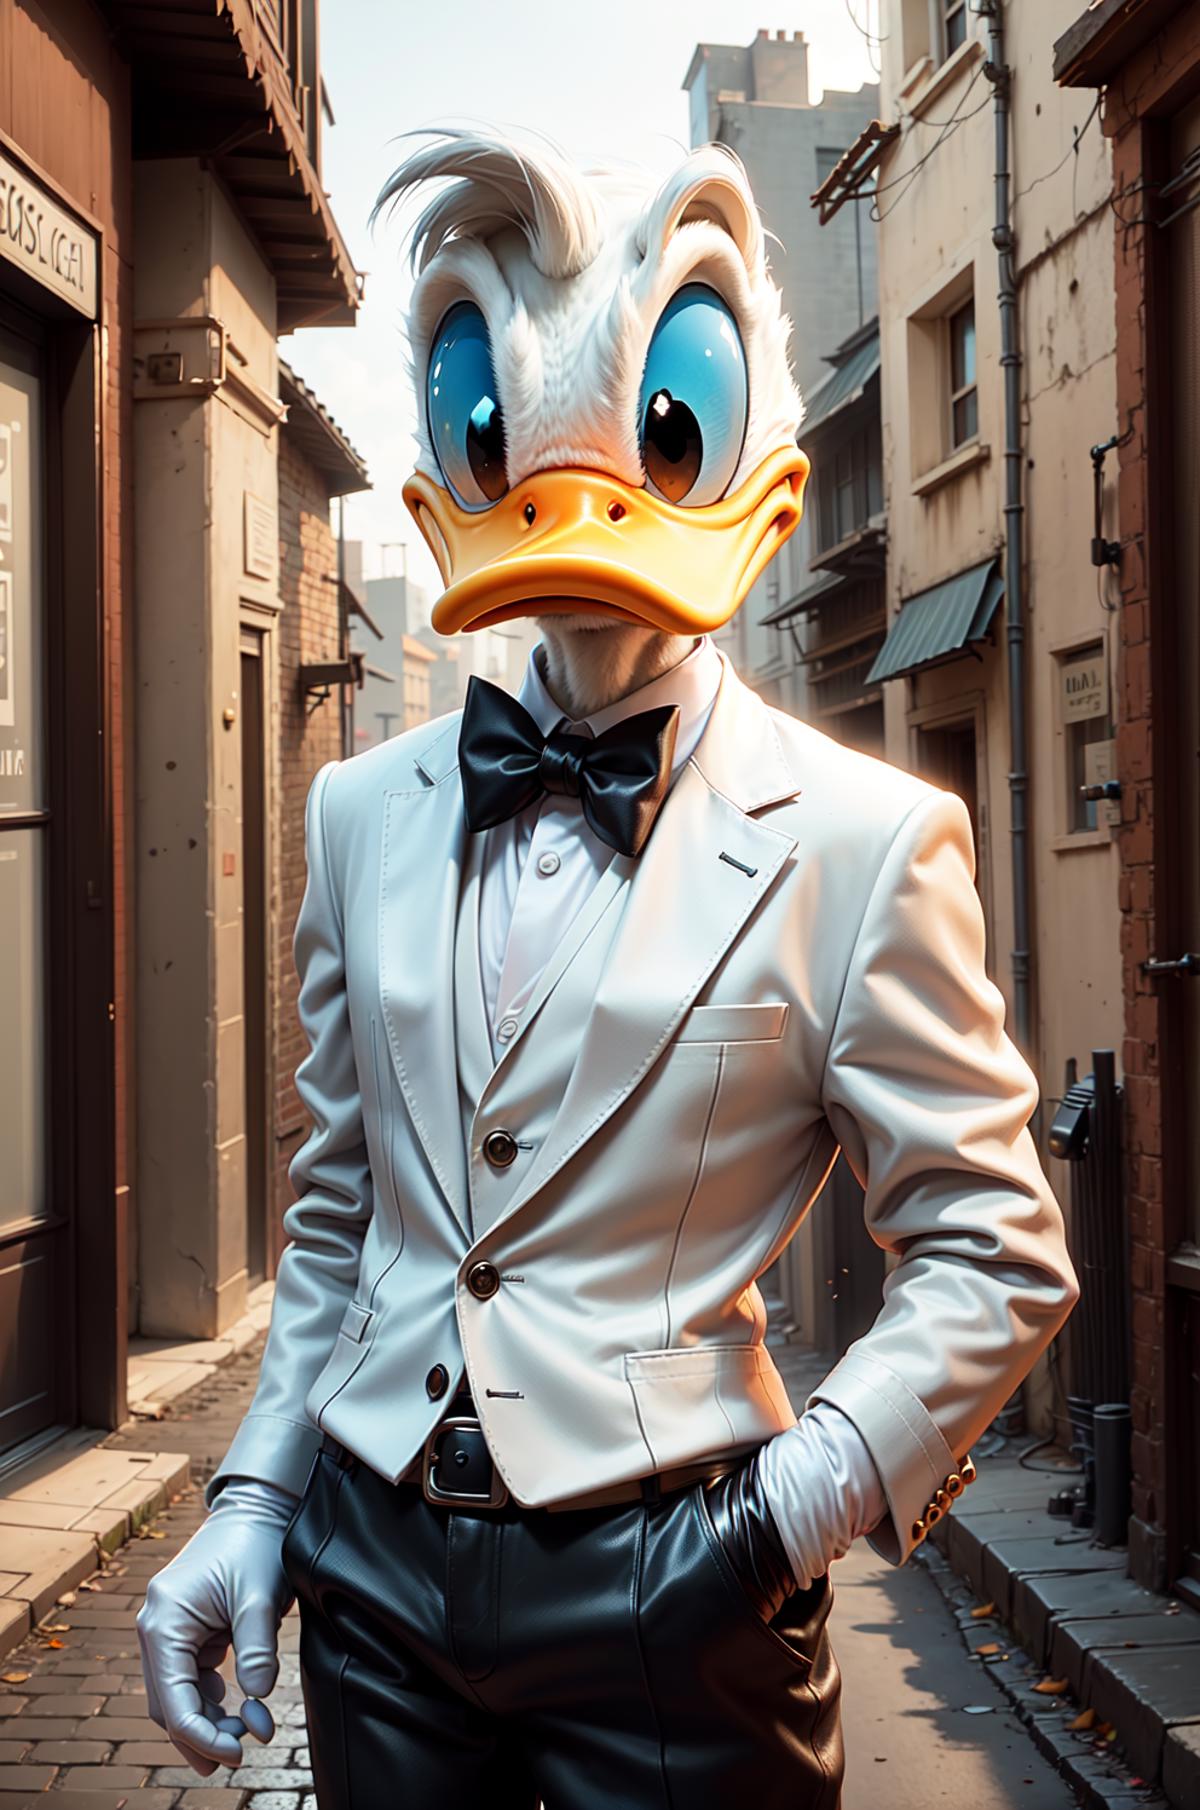 Donald Duck image by LDWorksDervlex